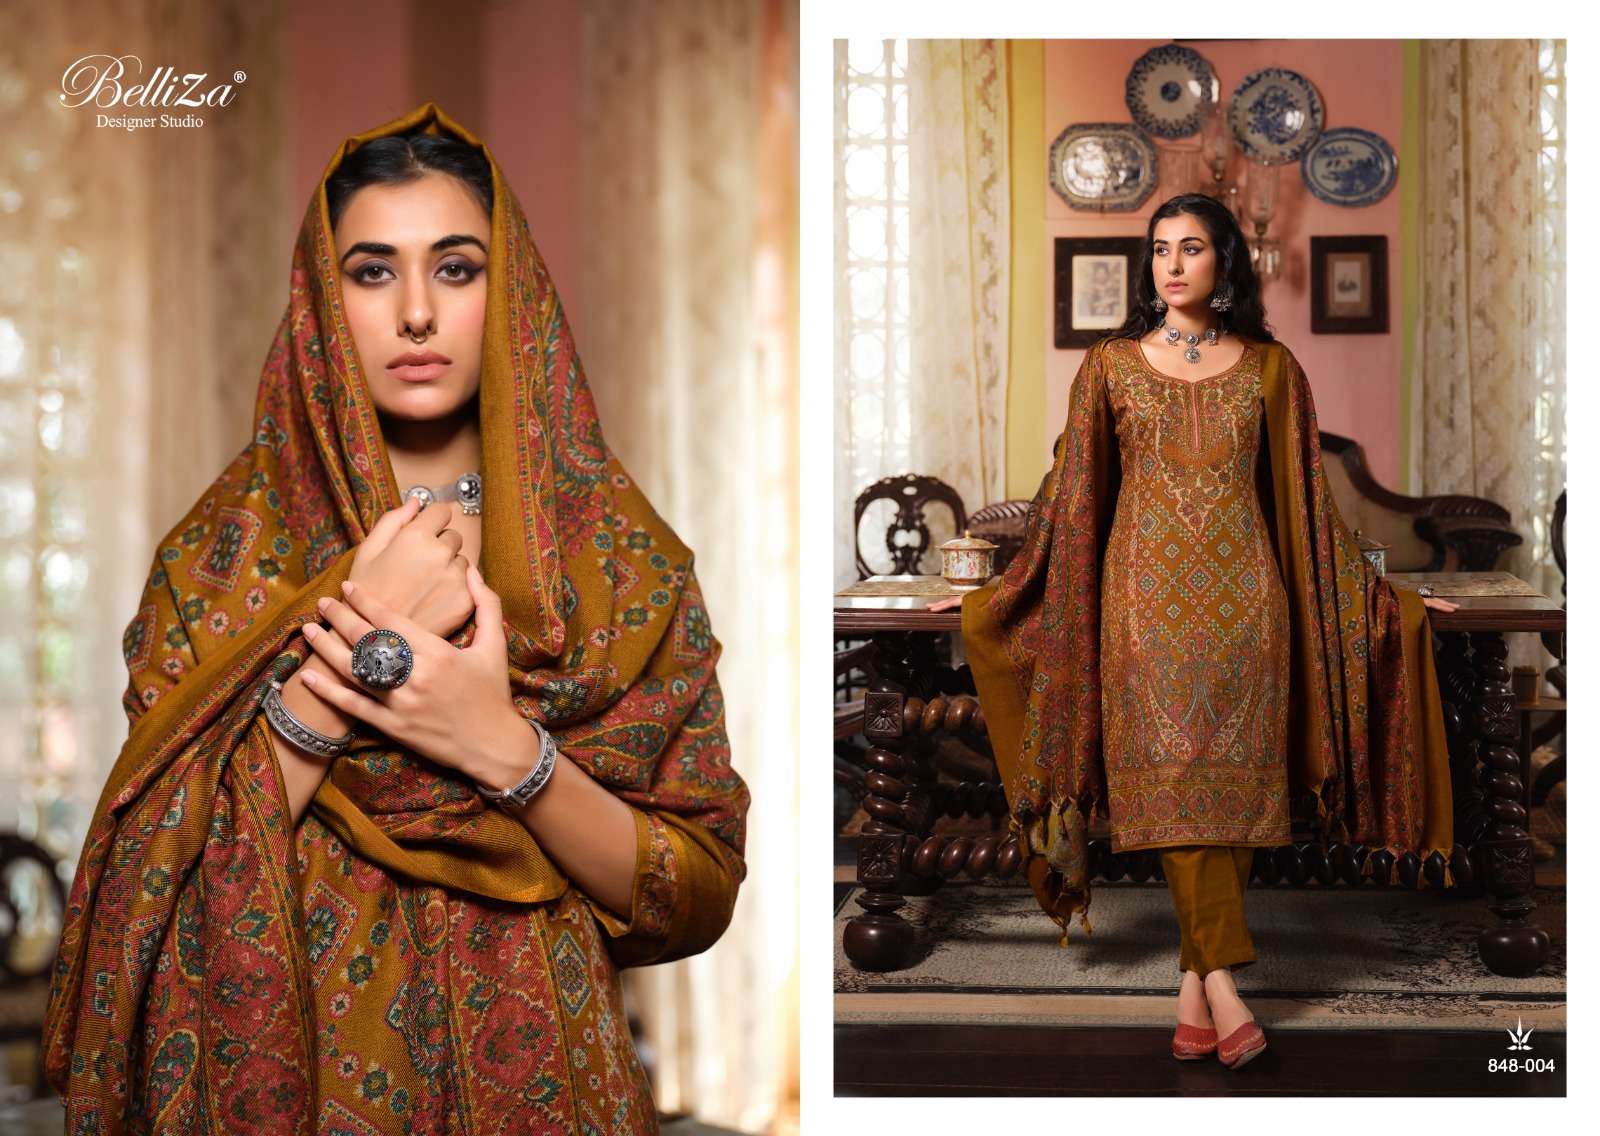 belliza designer studio cashmera kaani pure winter alpine wool pashmina innovative look salwar suit catalog